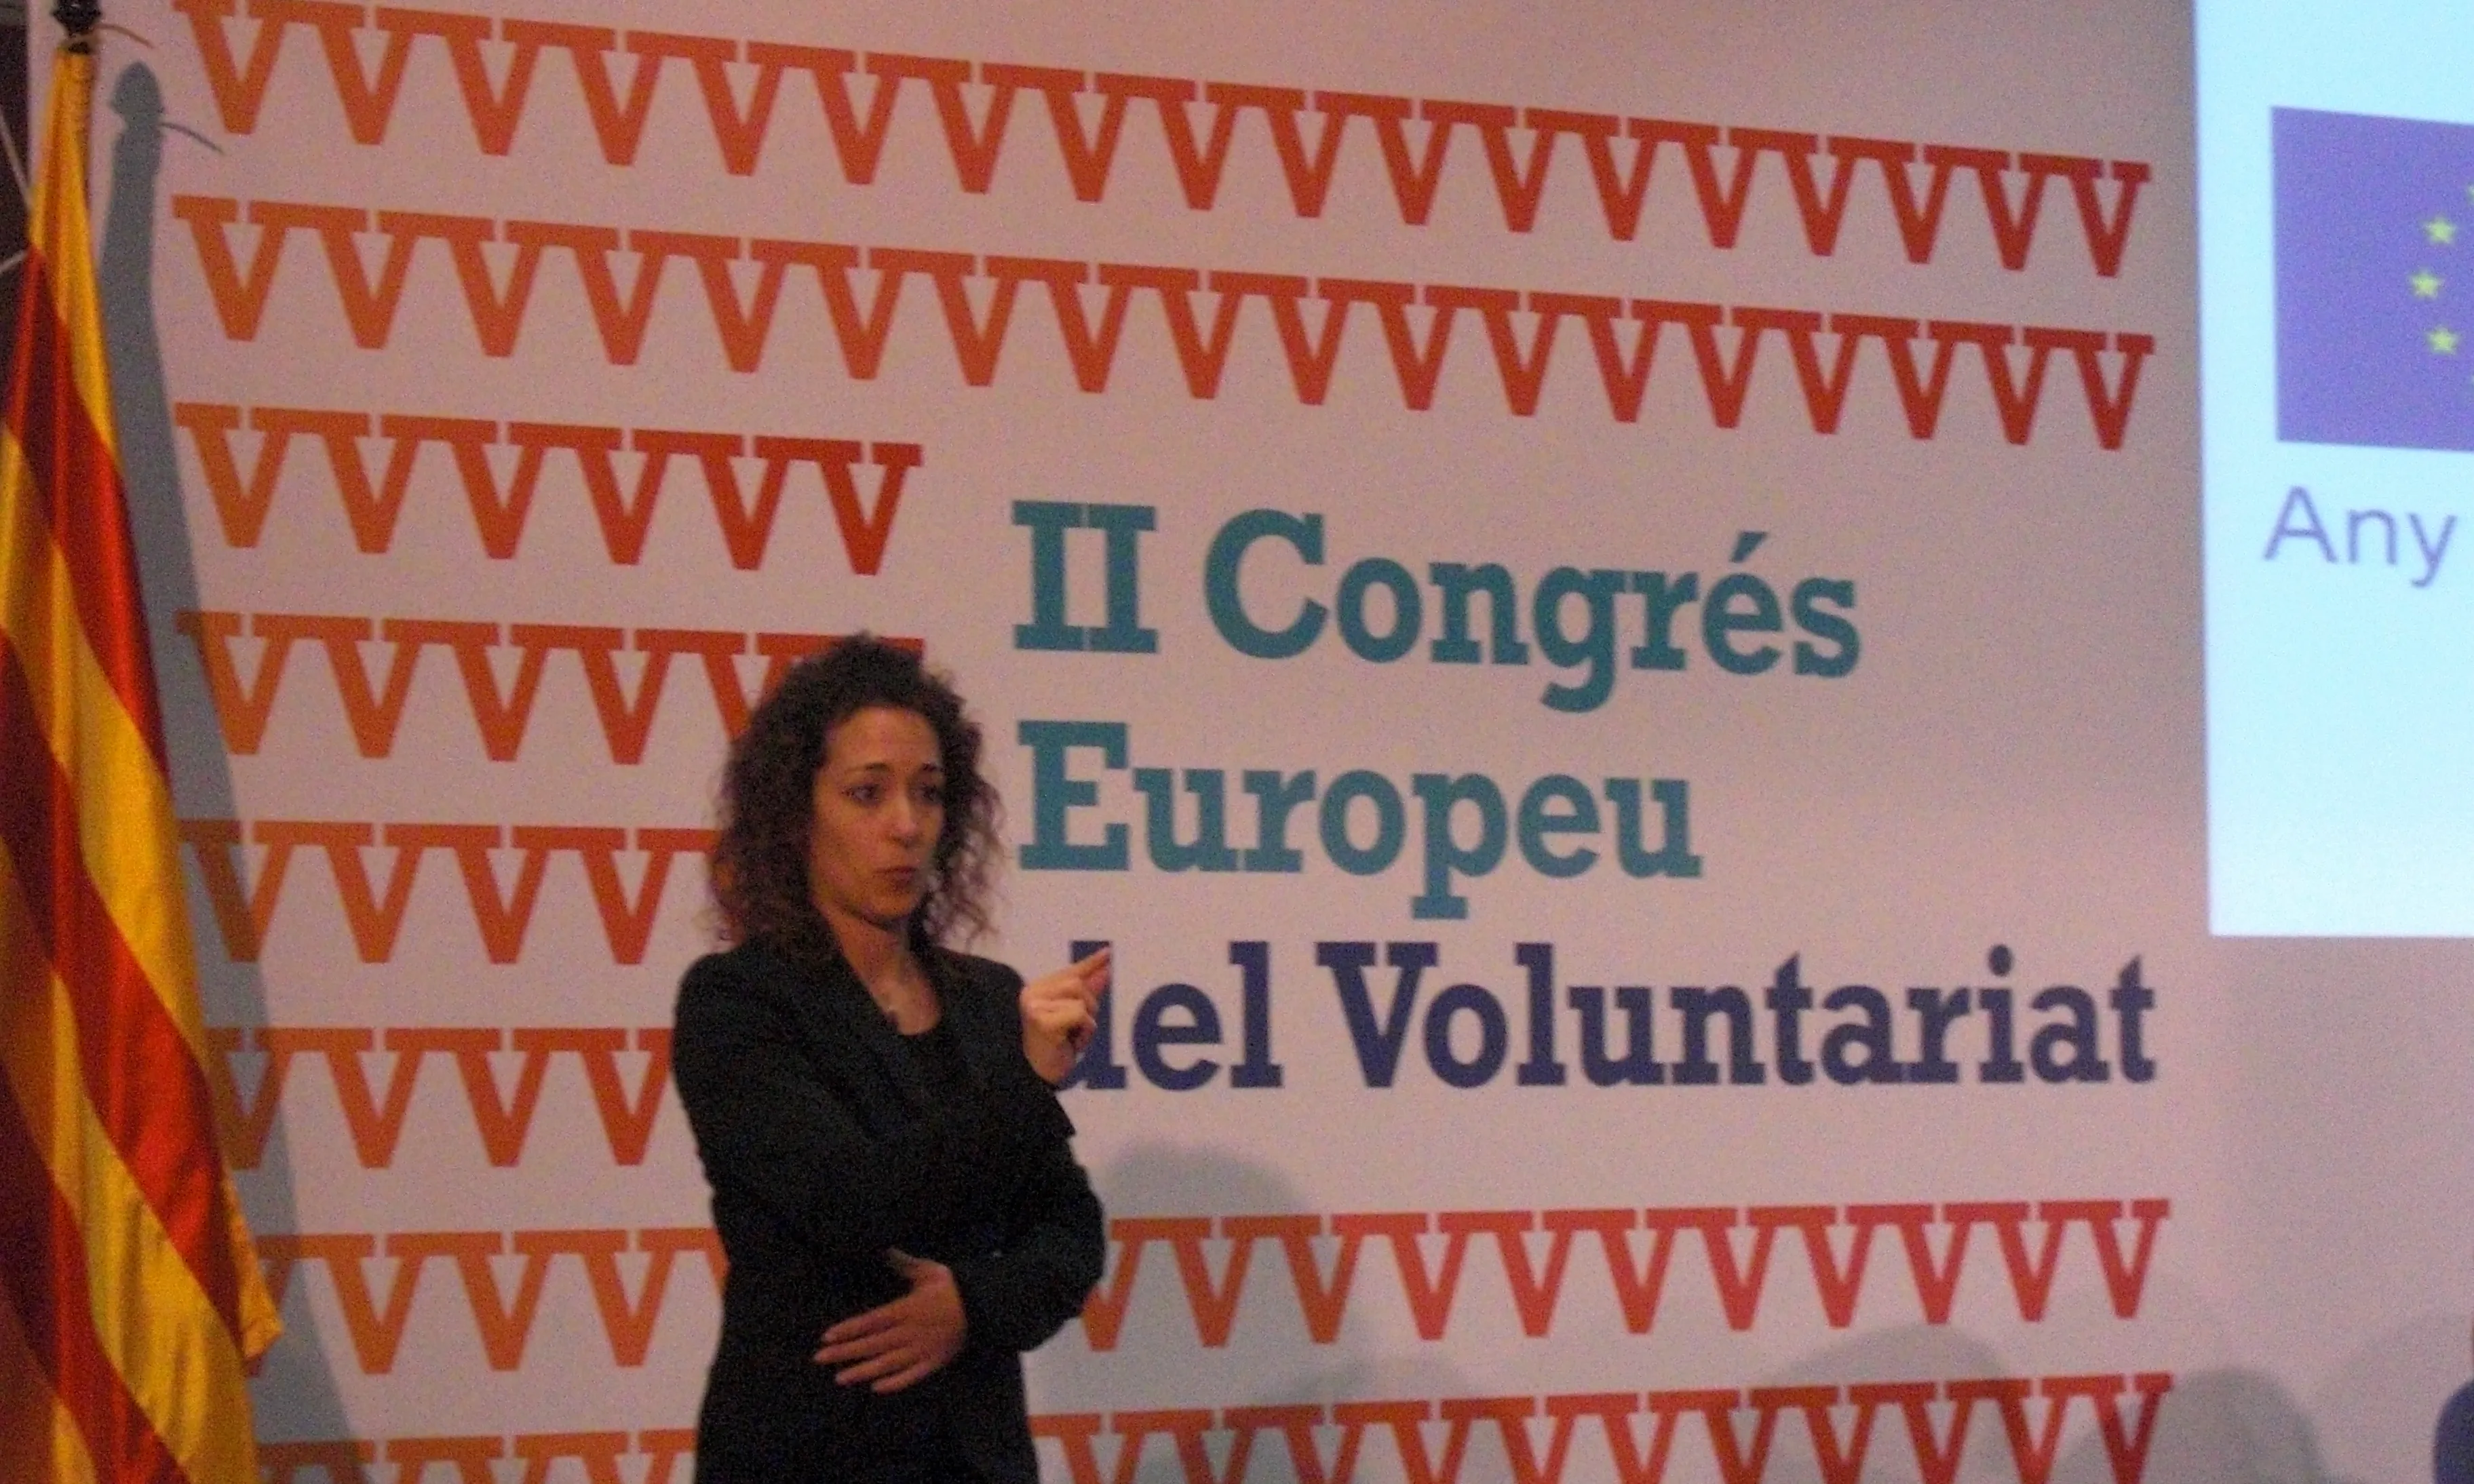 Benvinguda al II Congrés Europeu del Voluntariat